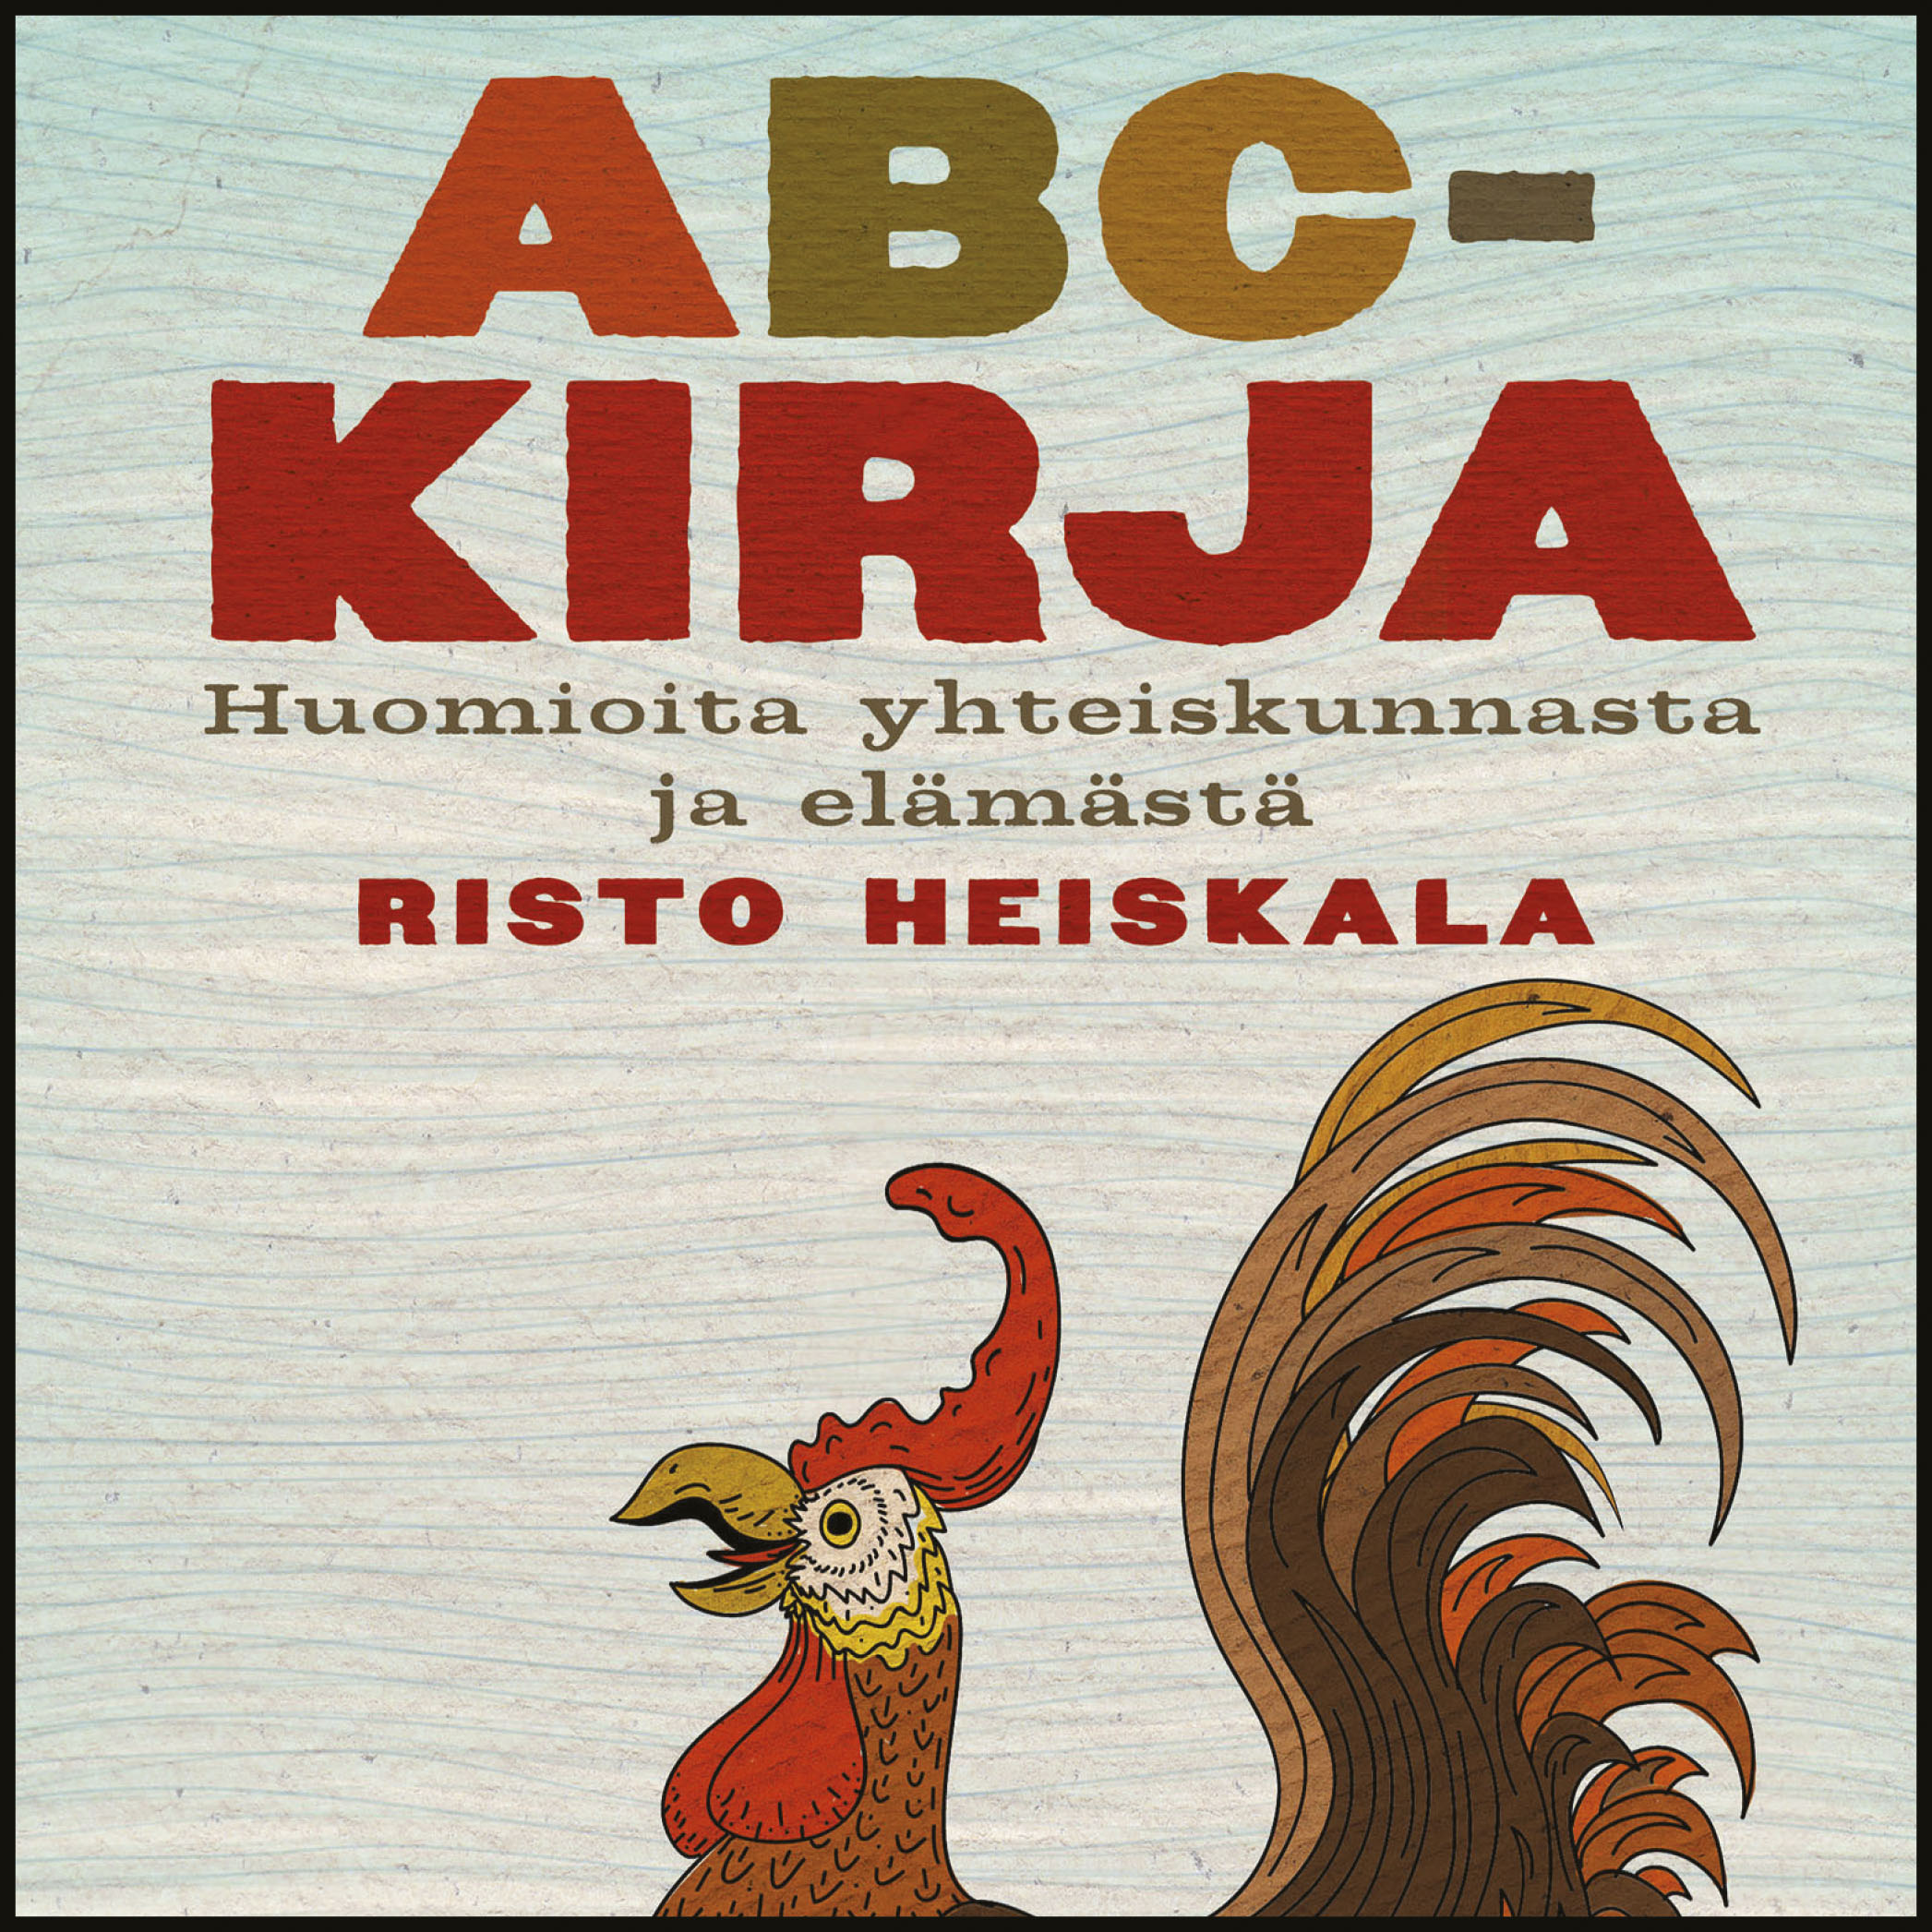 Heiskala, Risto - ABC-kirja: Huomioita yhteiskunnasta ja elämästä, audiobook